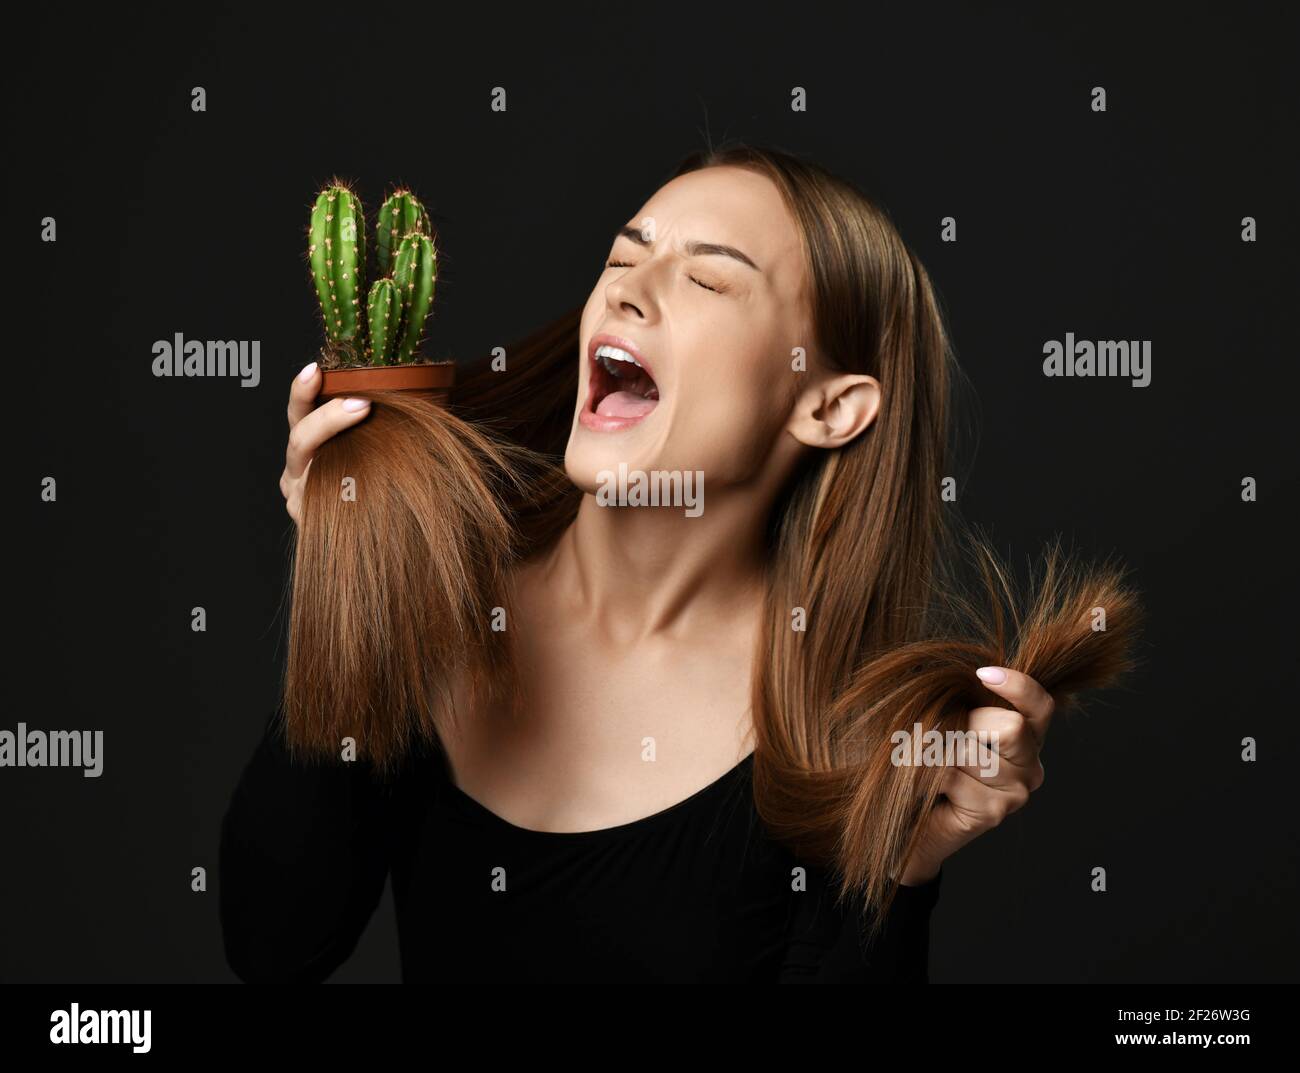 Frustrierte Frau mit langen seidig geraden Haaren in schwarzem Körper Schreiend schreiend hält Kaktuspflanze Vergleich mit Spliss Stockfoto